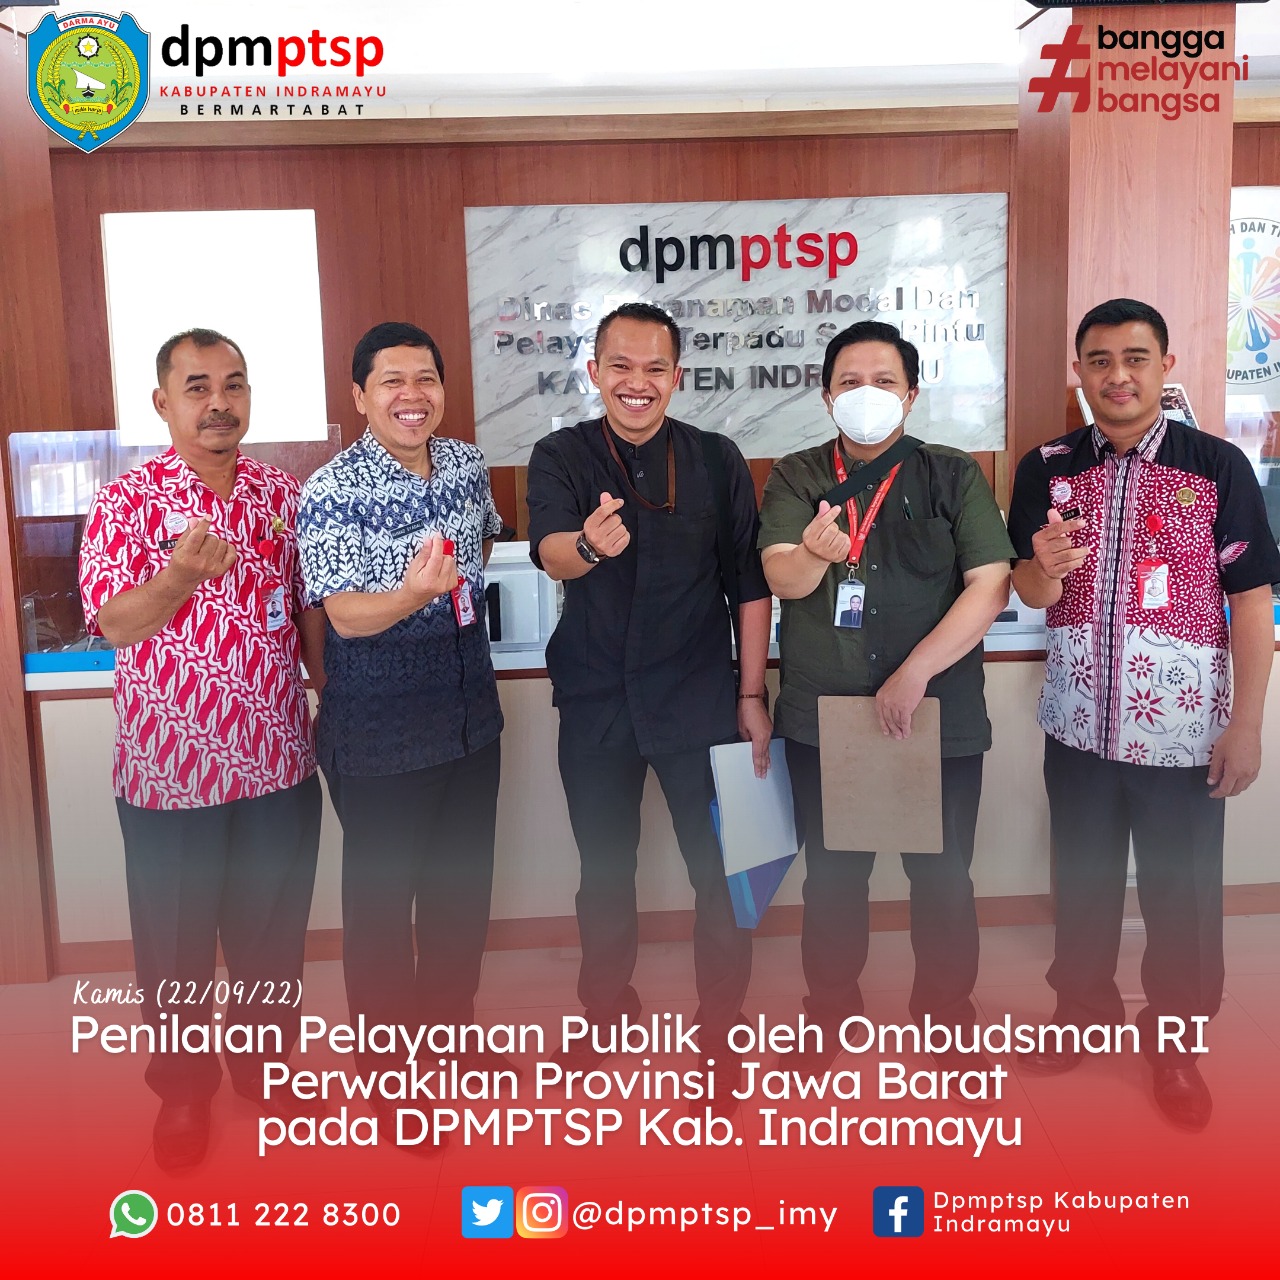 Penilaian Pelayanan Publik oleh Ombudsman RI perwakilan Jawa Barat pada DPMPTSP Kab. Indramayu